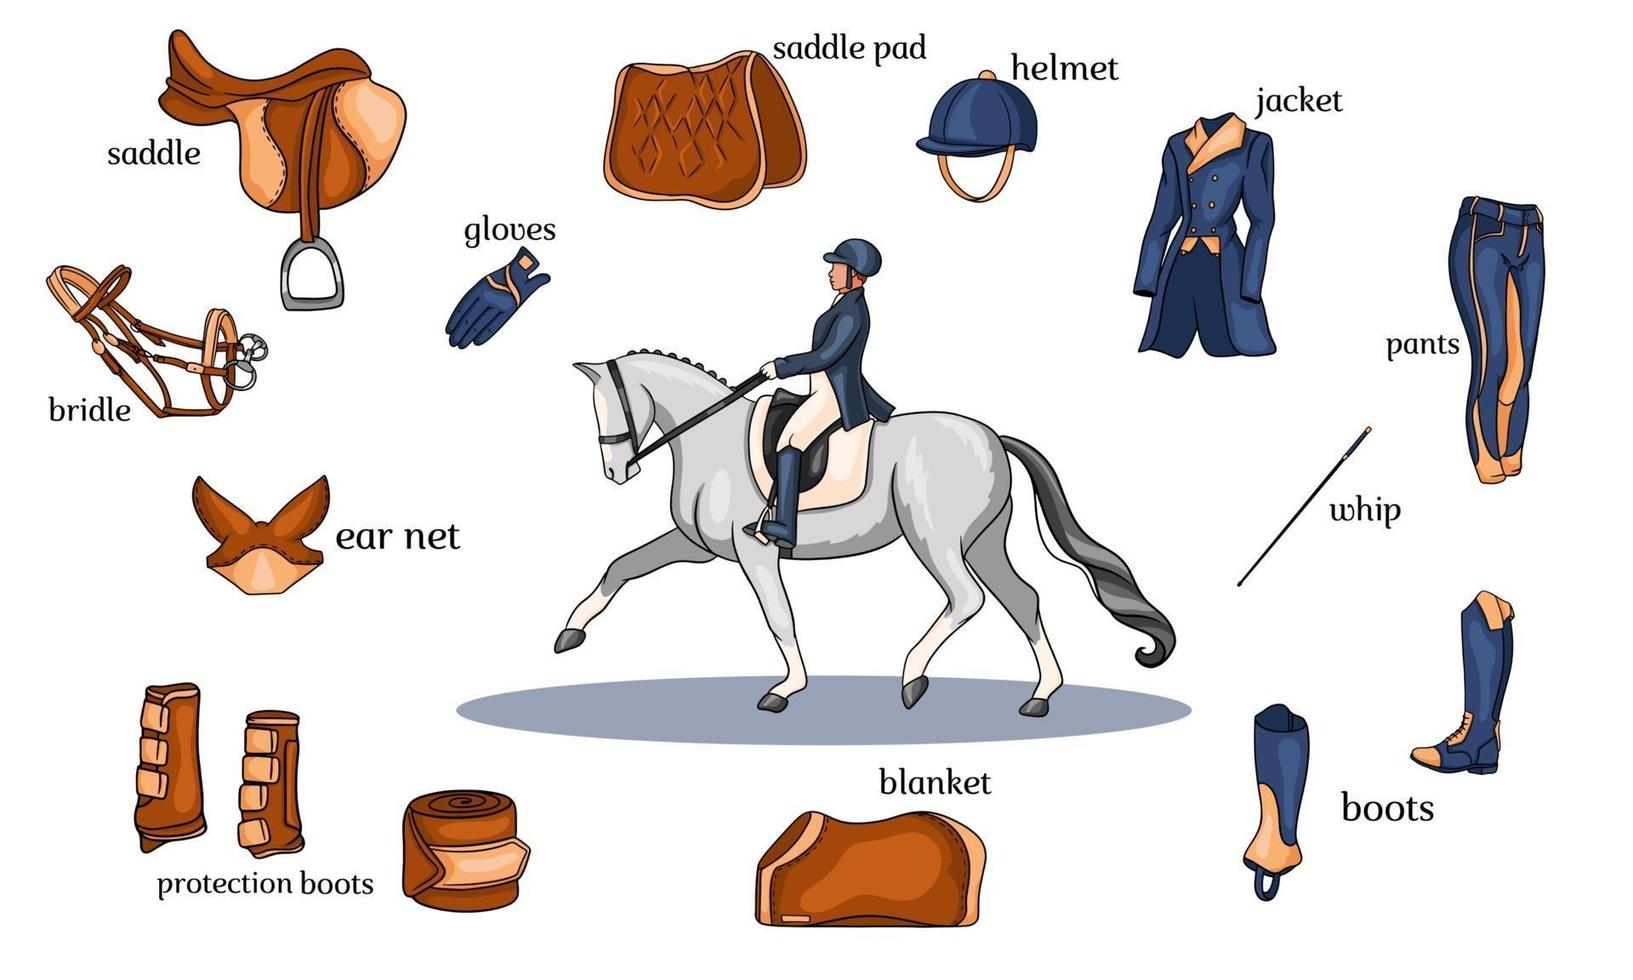 Infografía de deportes ecuestres arnés de caballos y equipo de jinete en el centro de un jinete sobre un caballo en estilo de dibujos animados vector